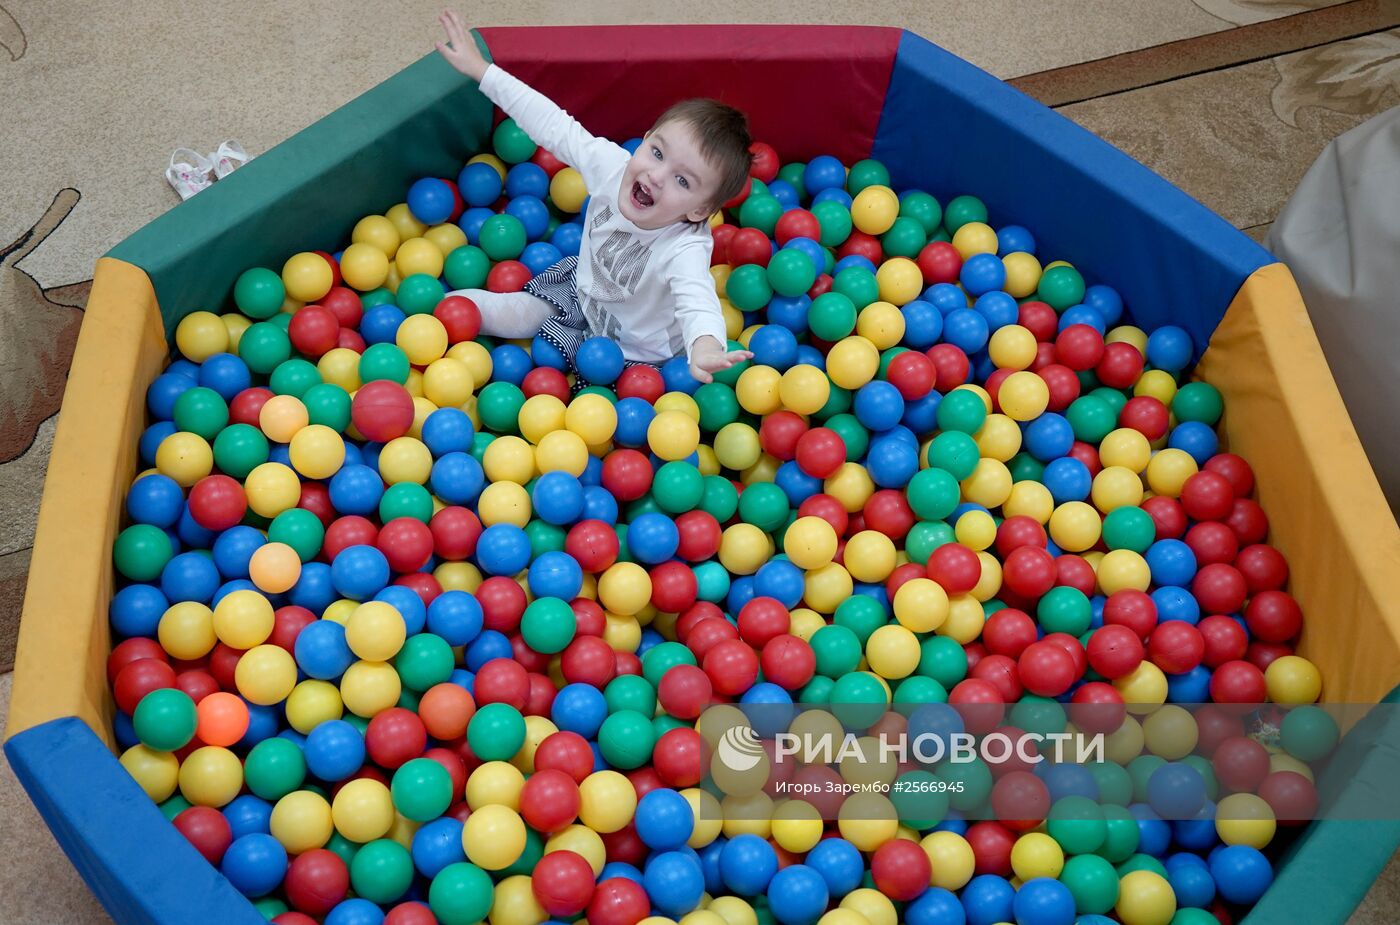 Центр помощи детям "Надежда" в Калининграде